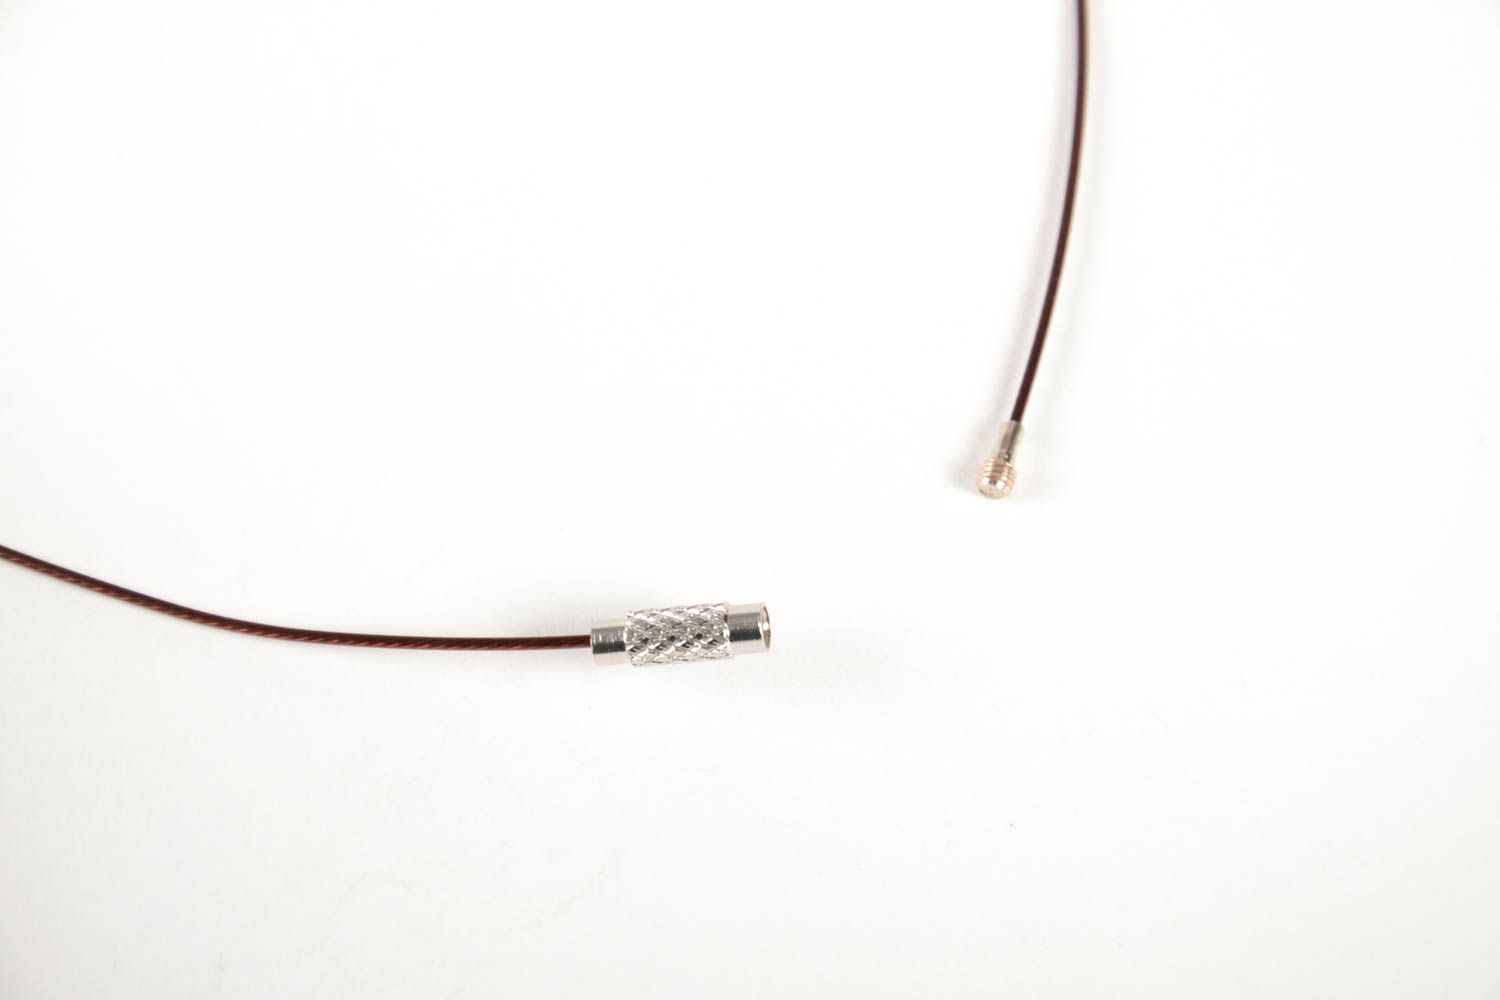 Copper pendant handmade copper wire jewelry stylish accessories for women photo 3